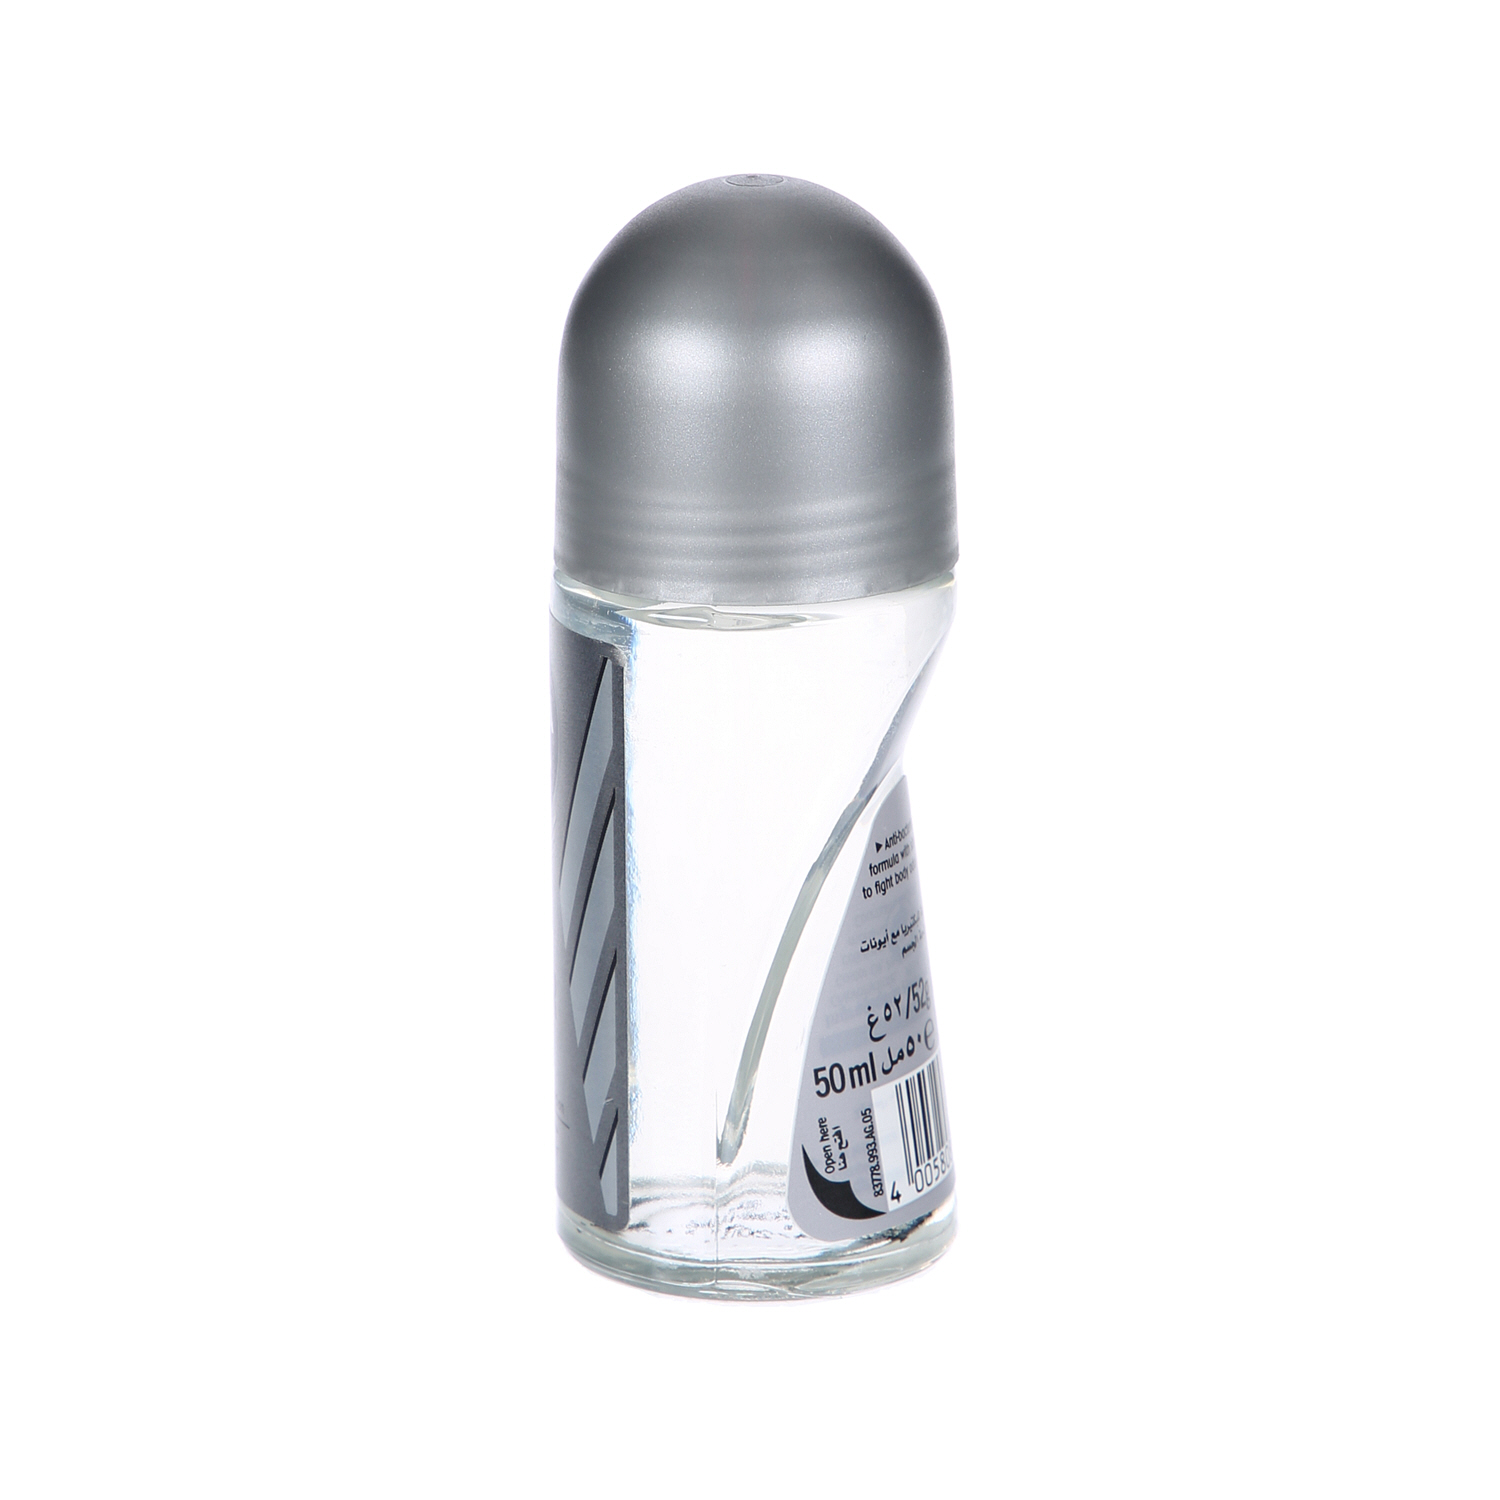 Nivea Deodorant Silver Protect Roll On Men 50ml